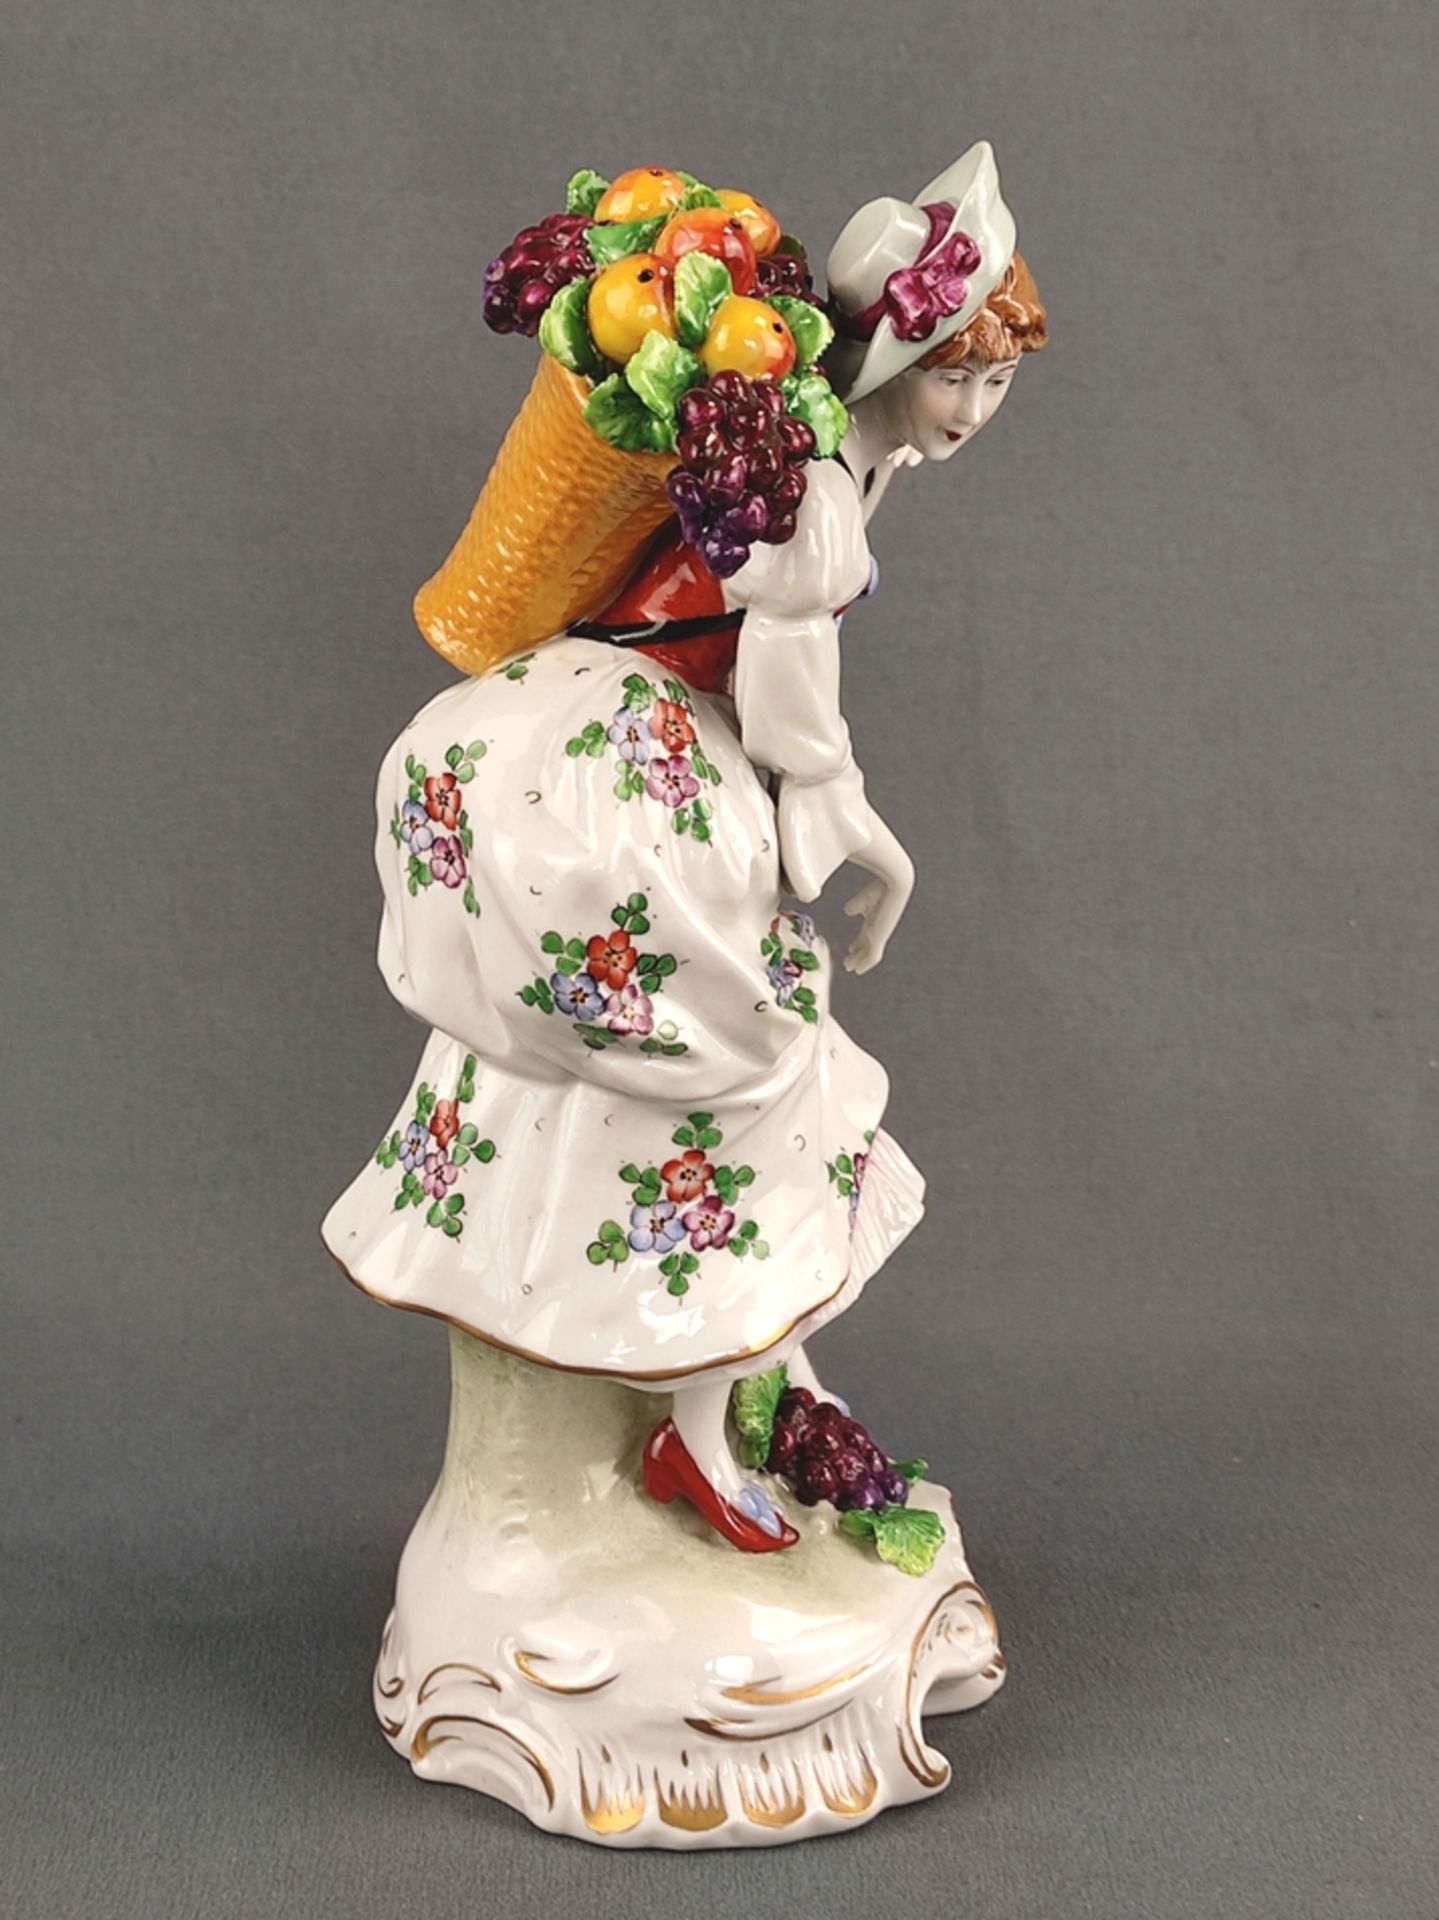 Porzellanfigur "Dame mit Obstkorb", Sitzendorfer Porzellanmanufaktur, 20. Jahrhundert, vollplastisc - Bild 3 aus 6